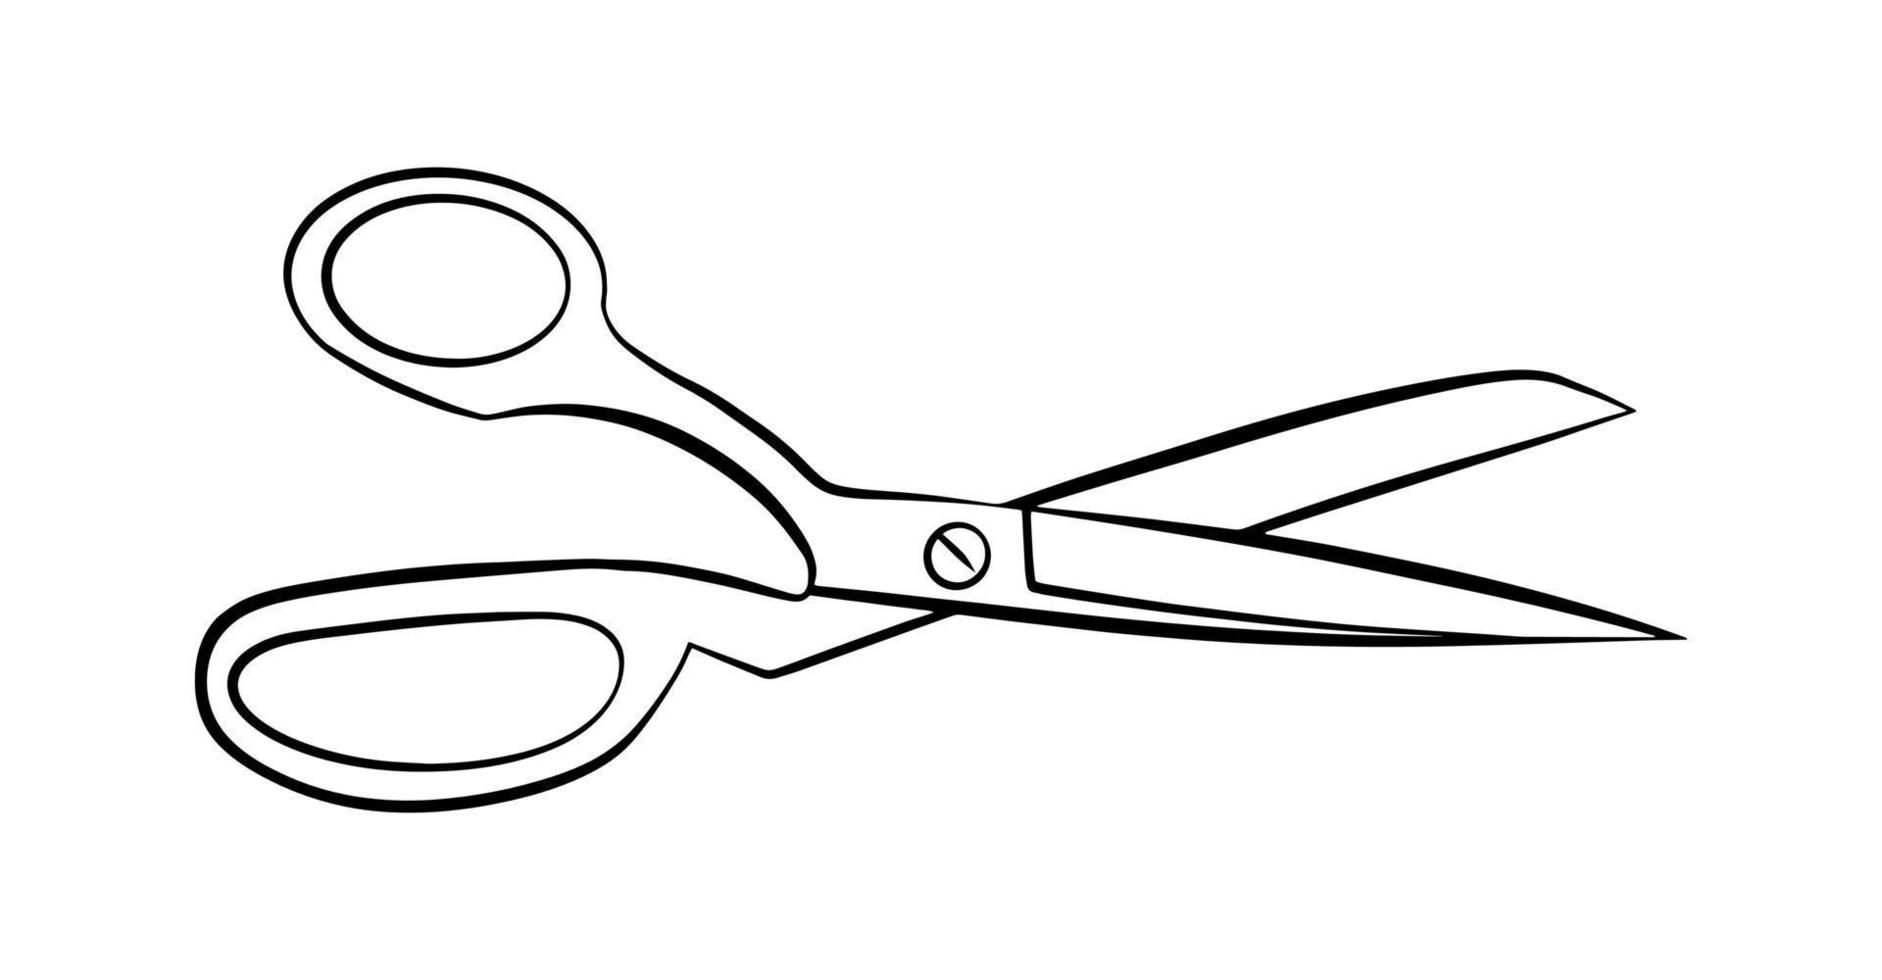 Taylor schaar overzicht pictogram geïsoleerde grafische vorm, eenvoudige doodle lineaire logo, snijden embleem teken. vector